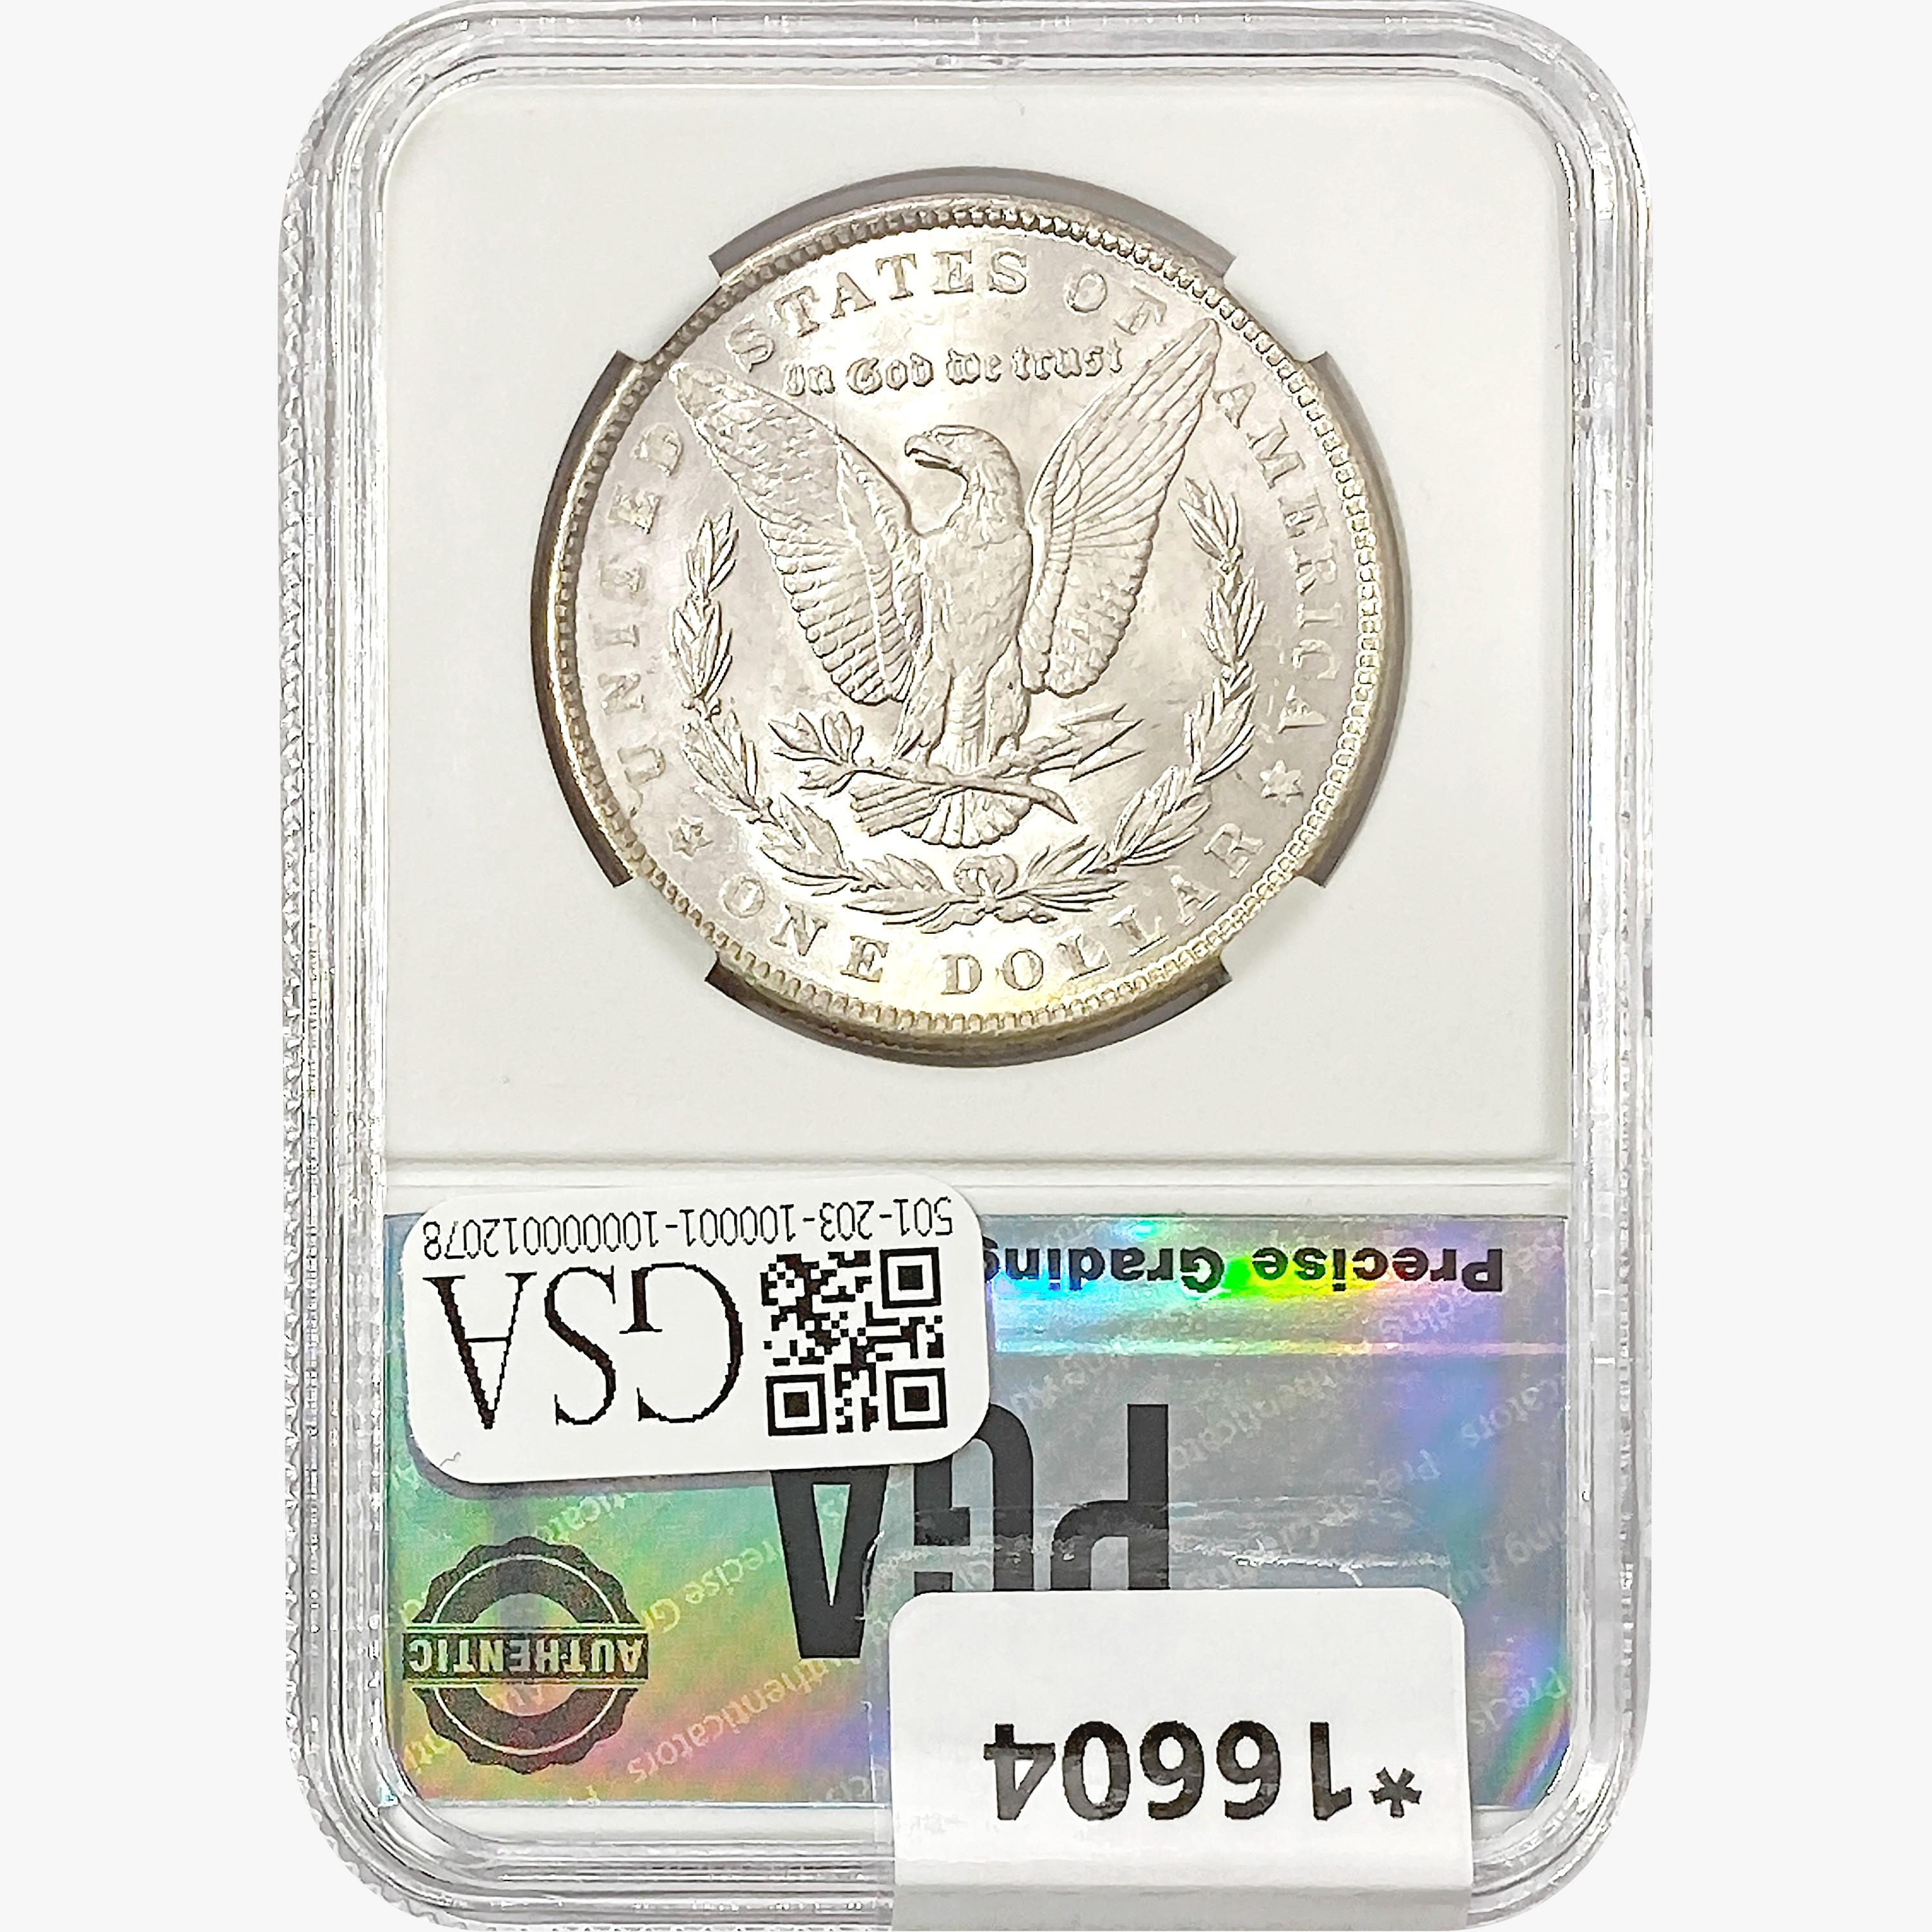 1888 Morgan Silver Dollar PGA MS66